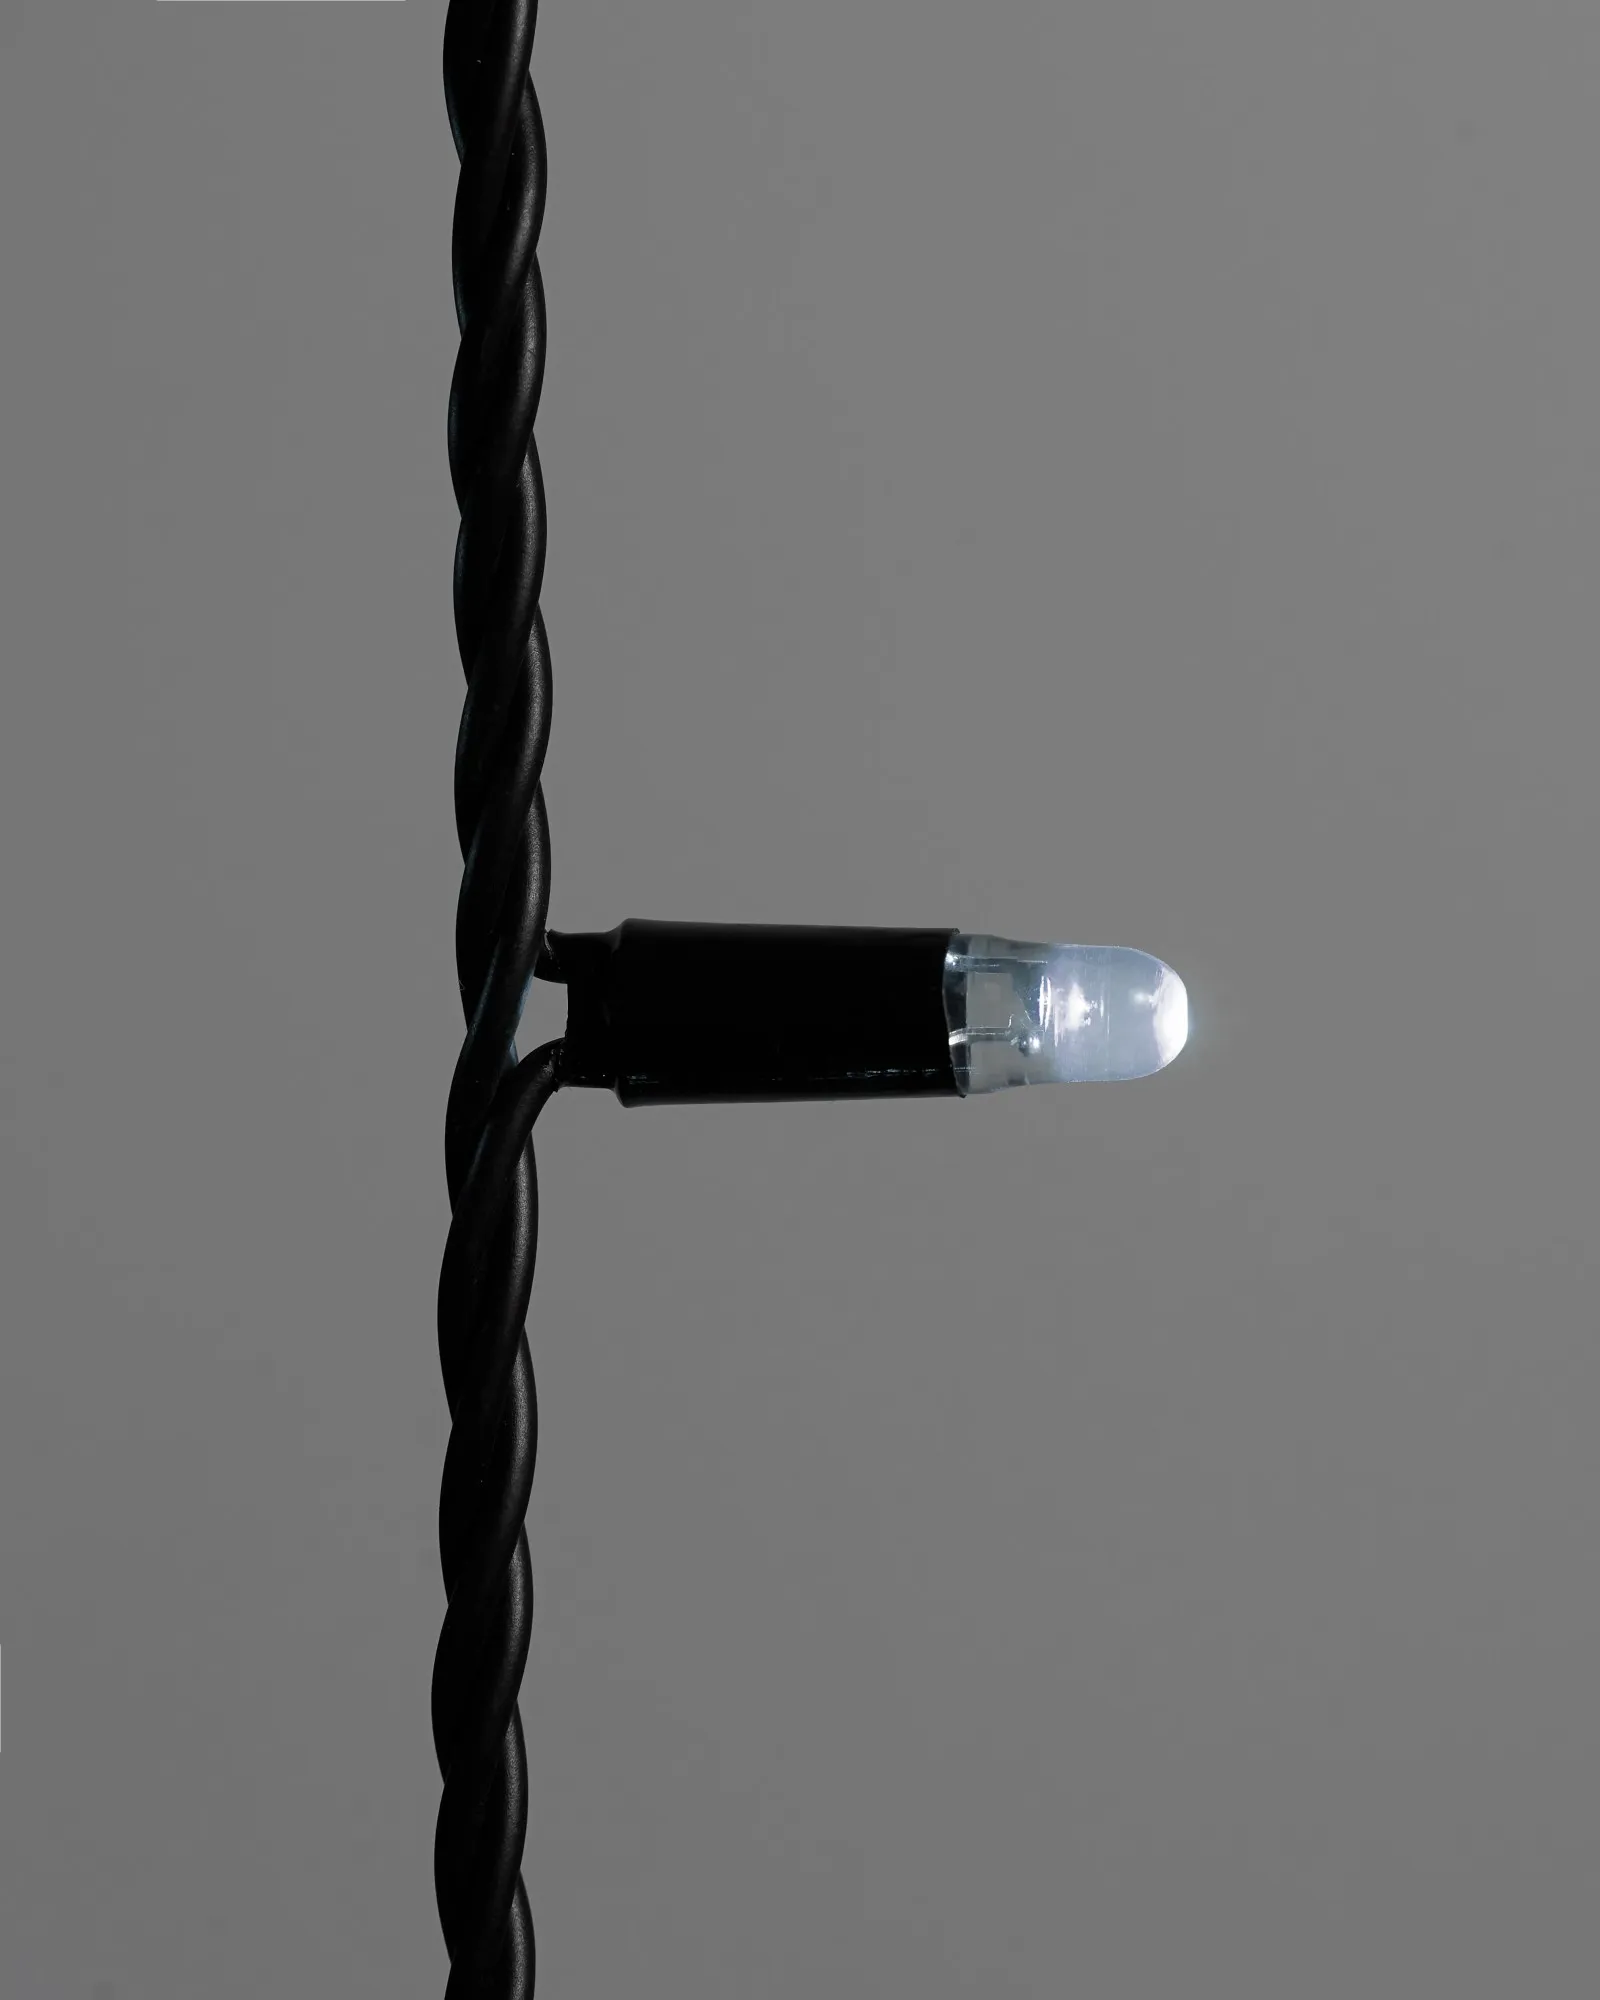 Гирлянда Занавес INOXHUB 2х6м, мерцающий, 600 LED, 220В, IP65, черная резина 2.3мм, БЕЛЫЙ фото Иноксхаб